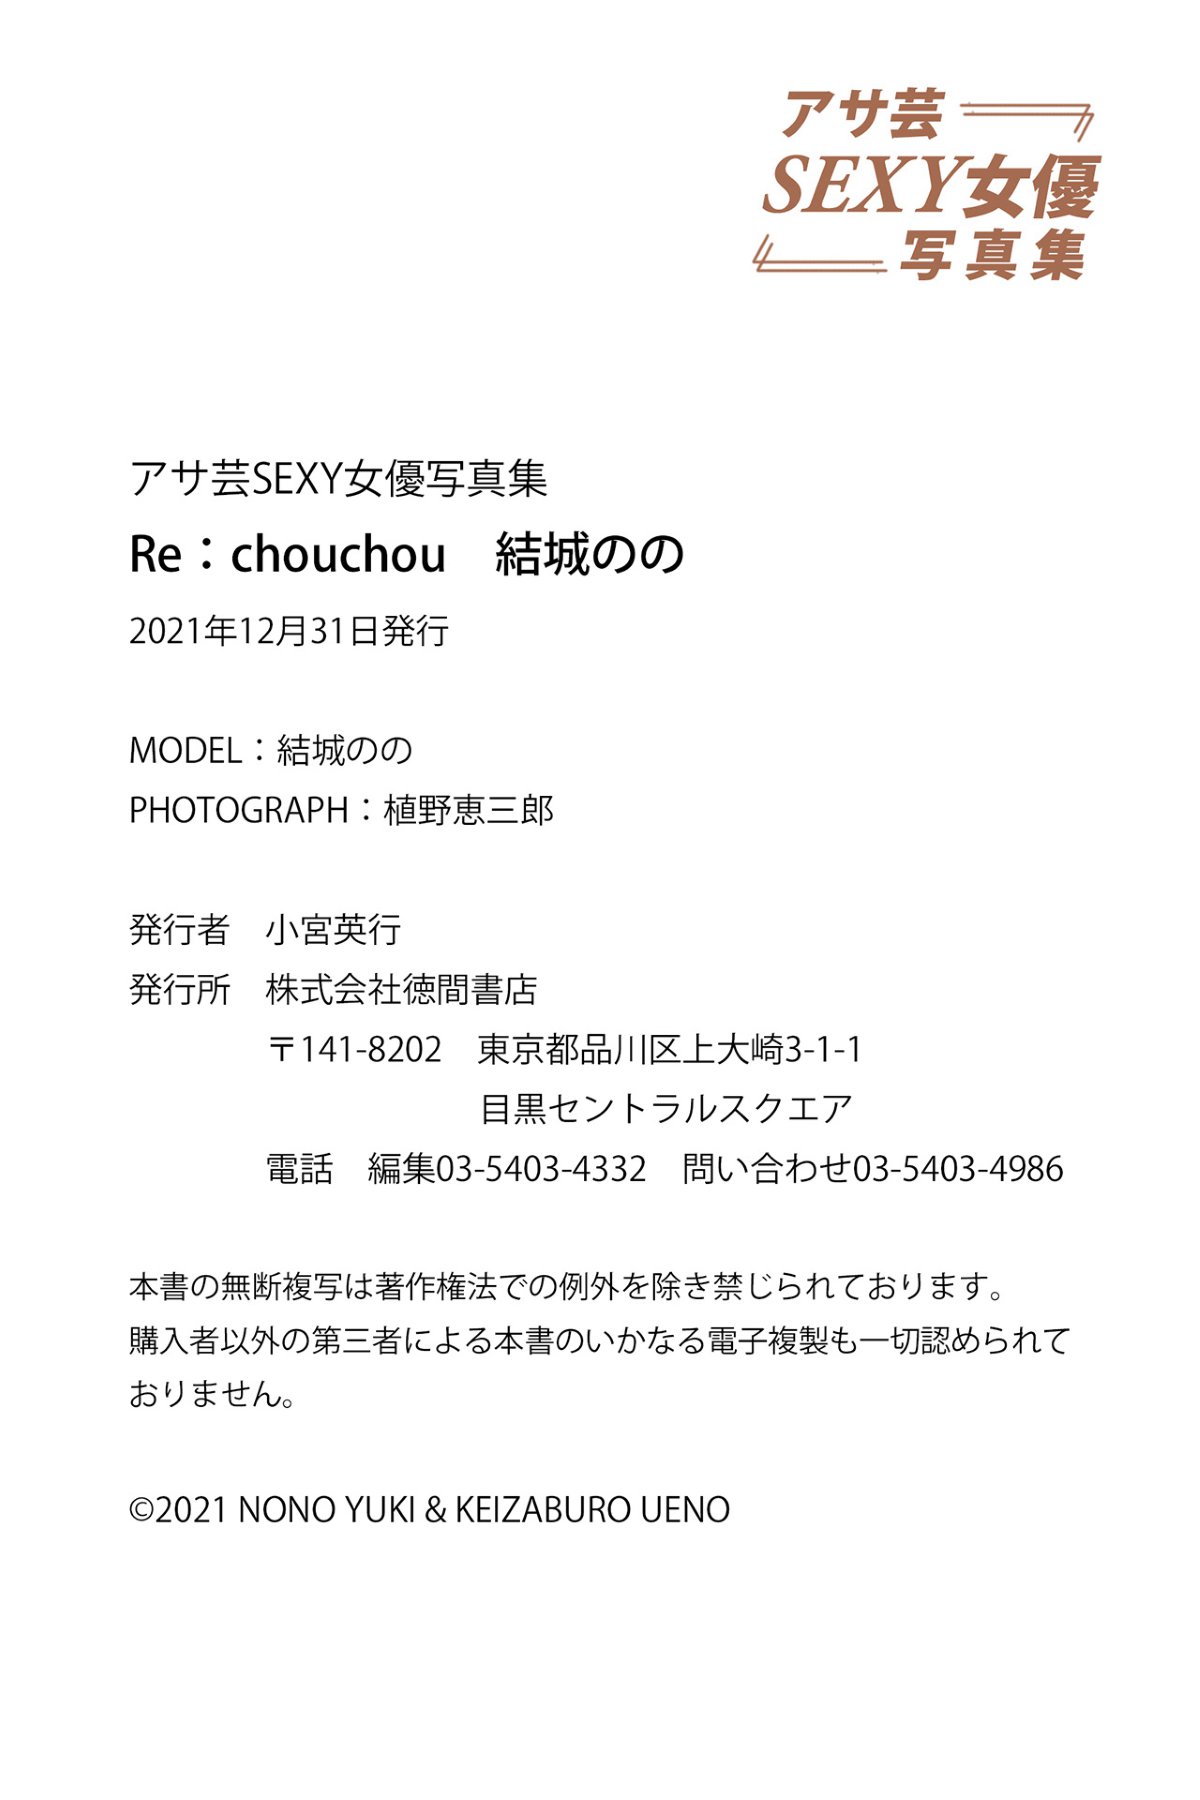 Photobook Nono Yuki 結城のの Rechouchou 2021 12 22 0040 0494639435.jpg